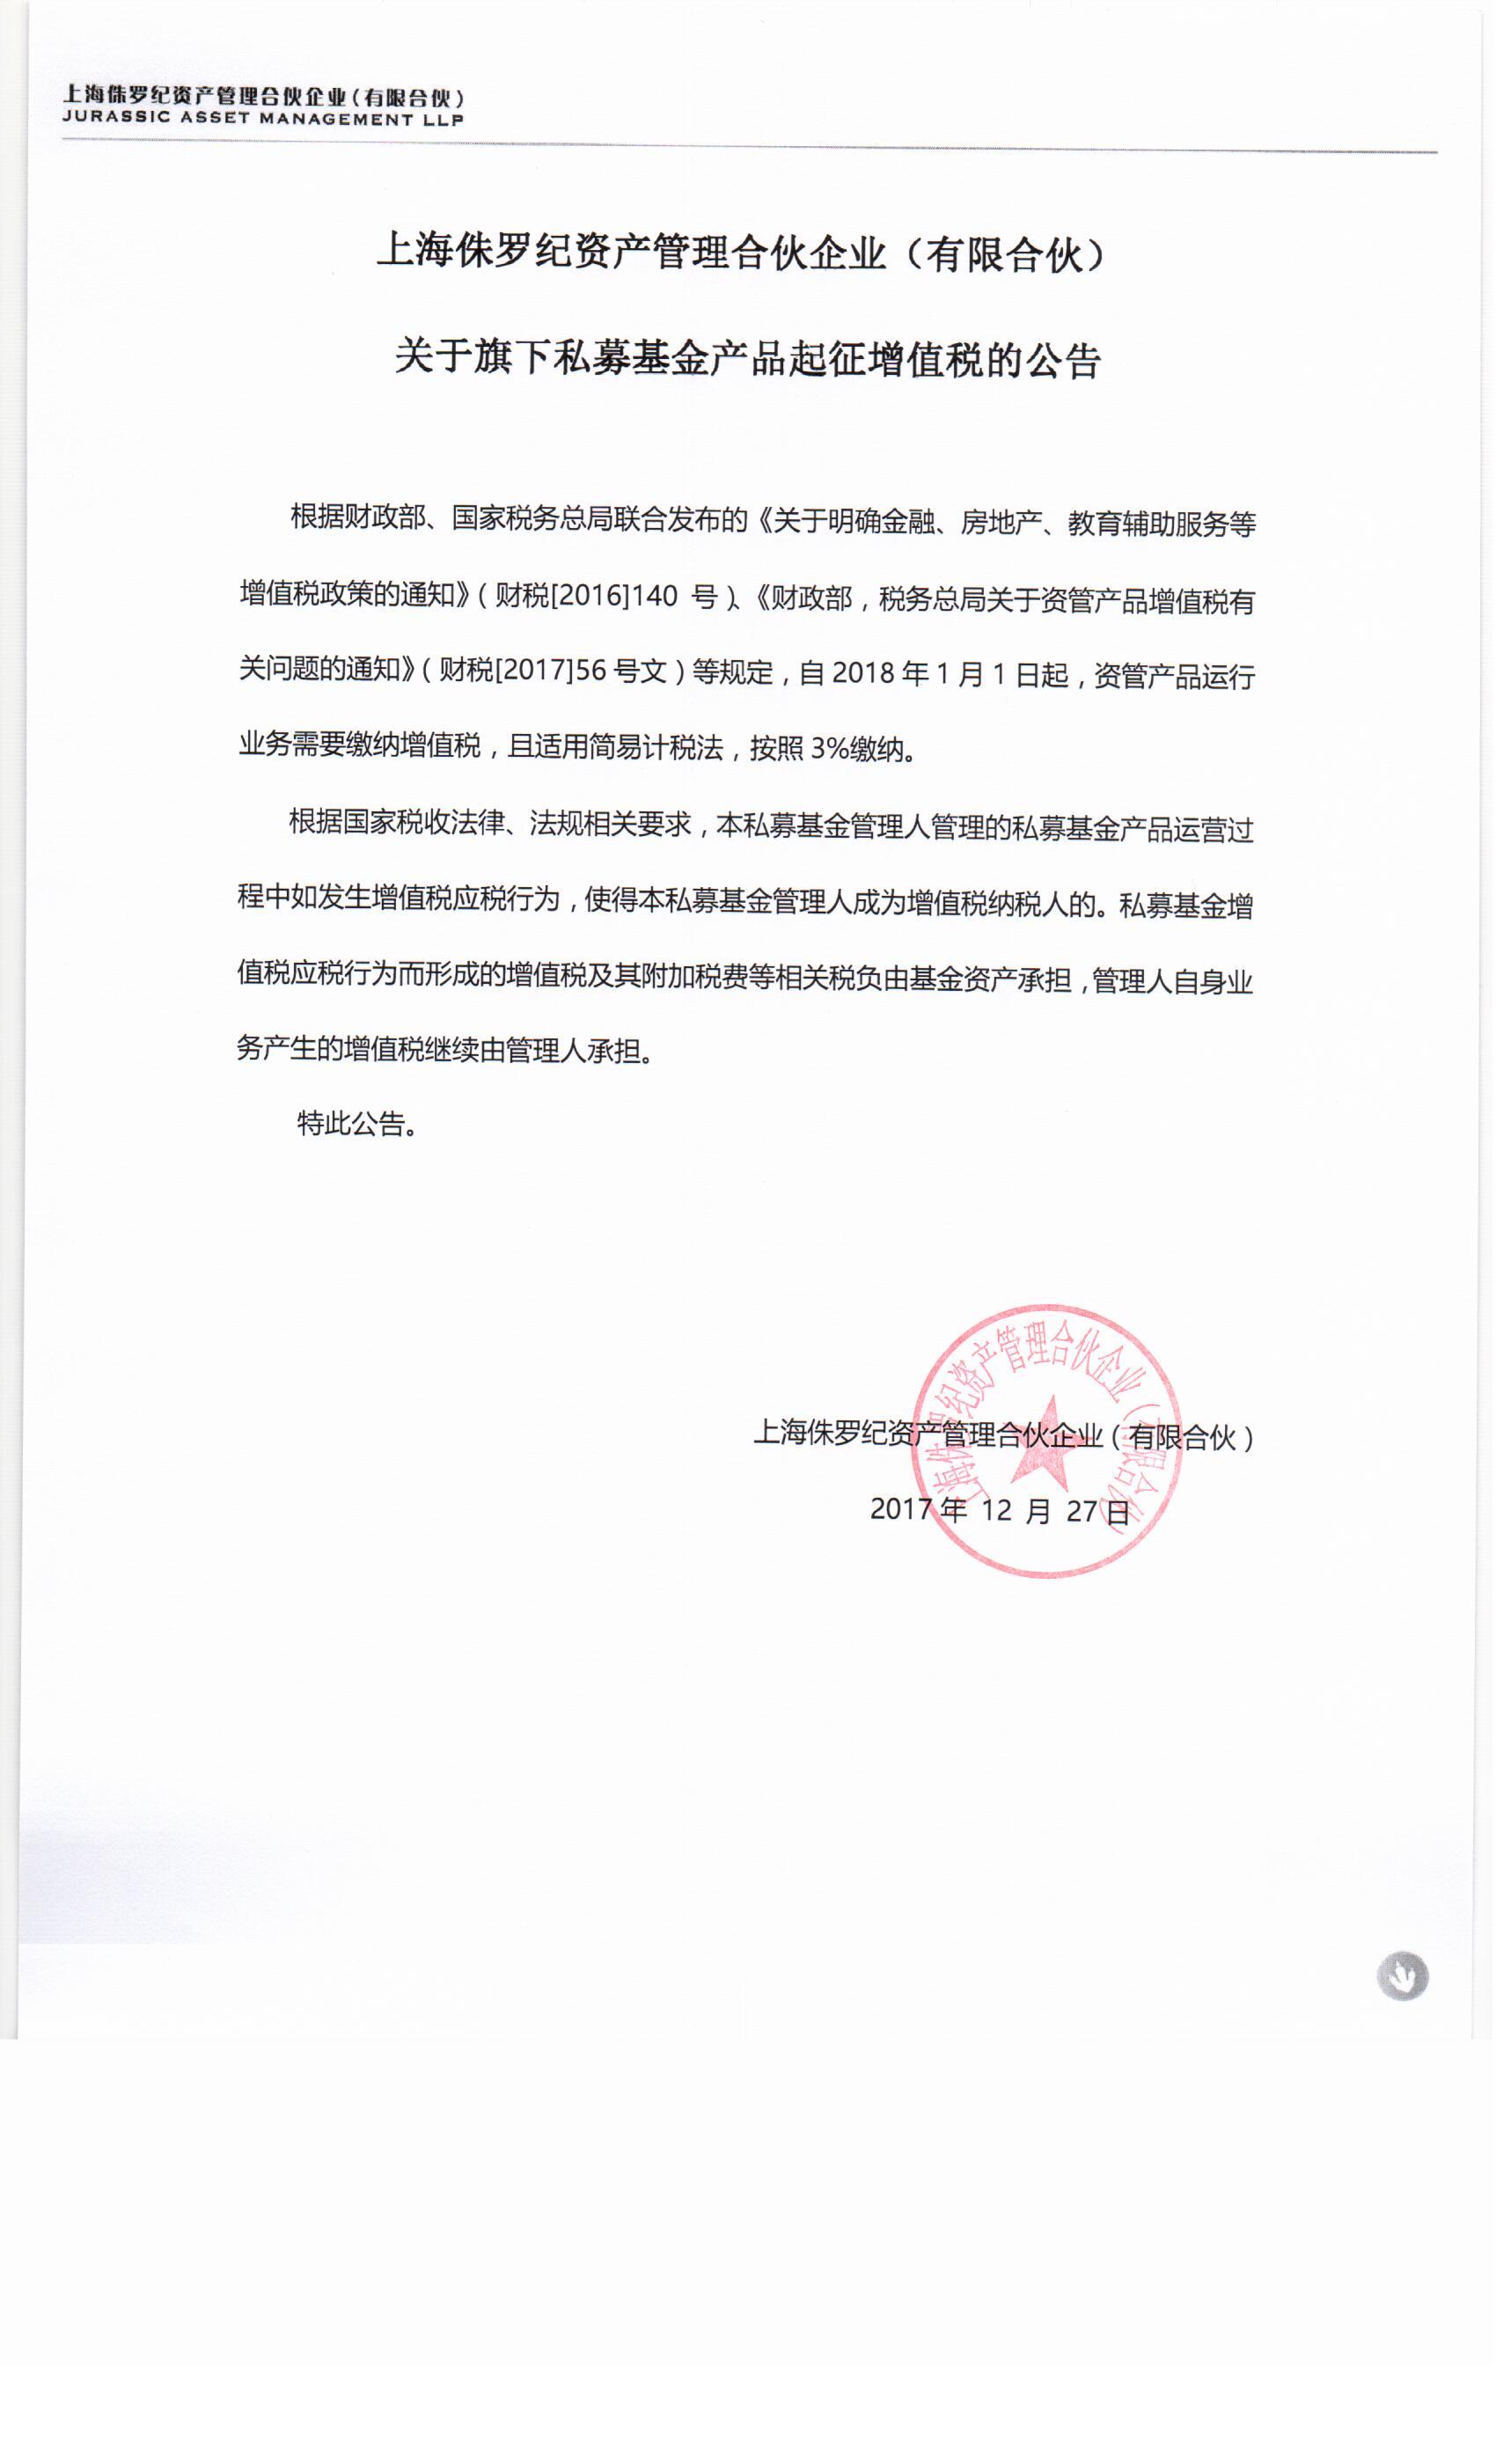 上海侏罗纪资产管理合伙企业（有限合伙）关于旗下私募基金产品起征增值税的公告